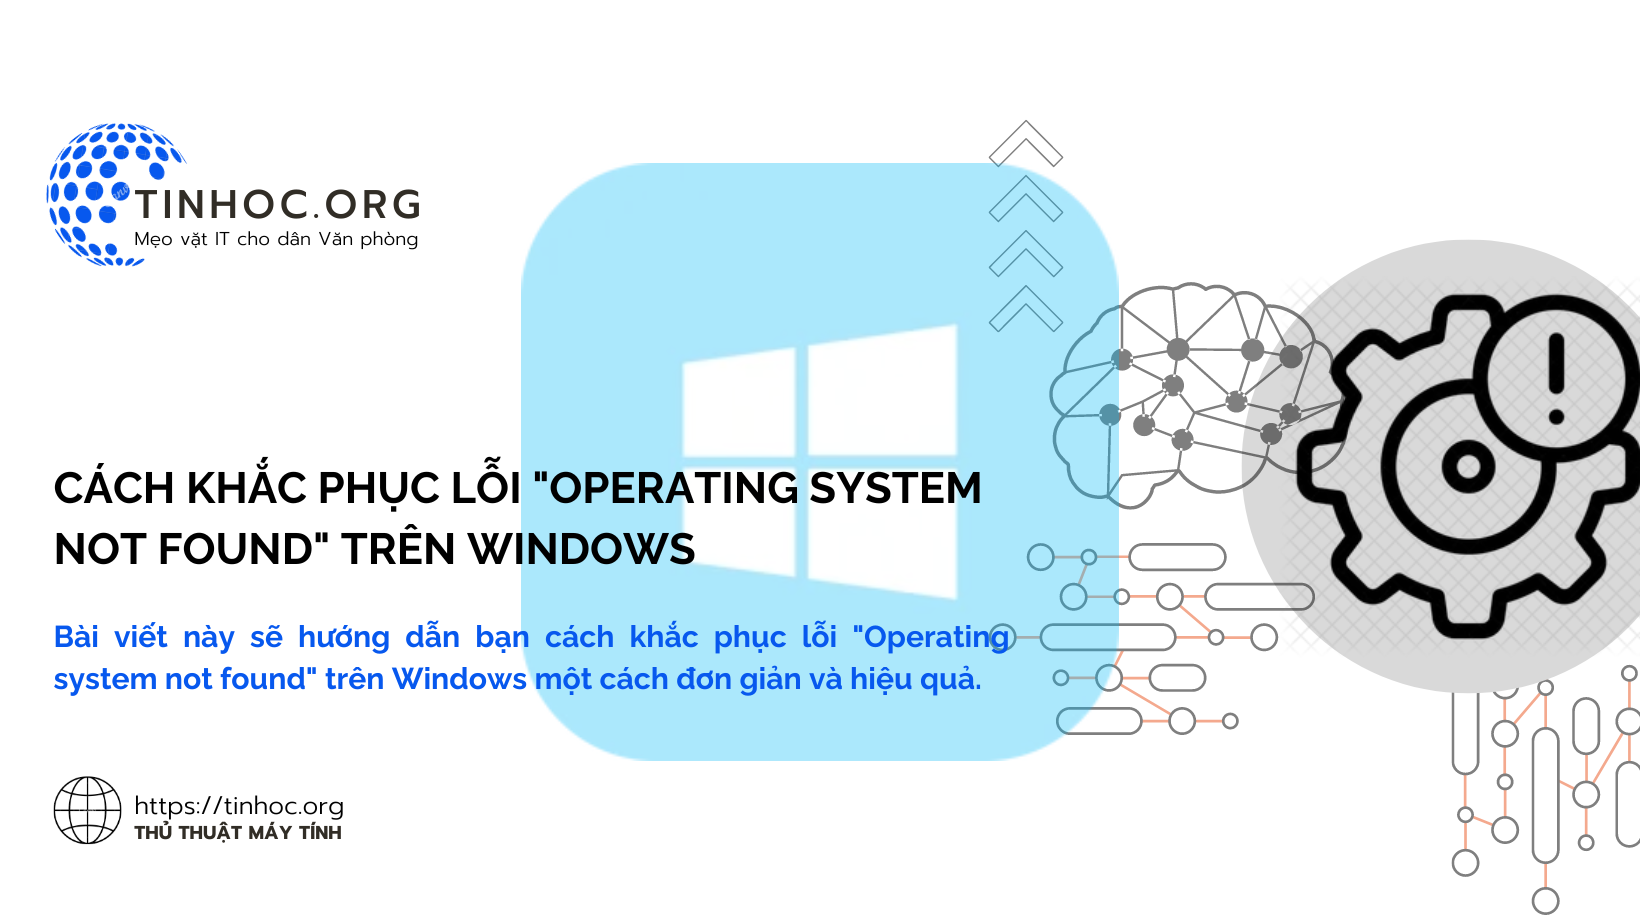 Bài viết này sẽ hướng dẫn bạn cách khắc phục lỗi "Operating system not found" trên Windows một cách đơn giản và hiệu quả.